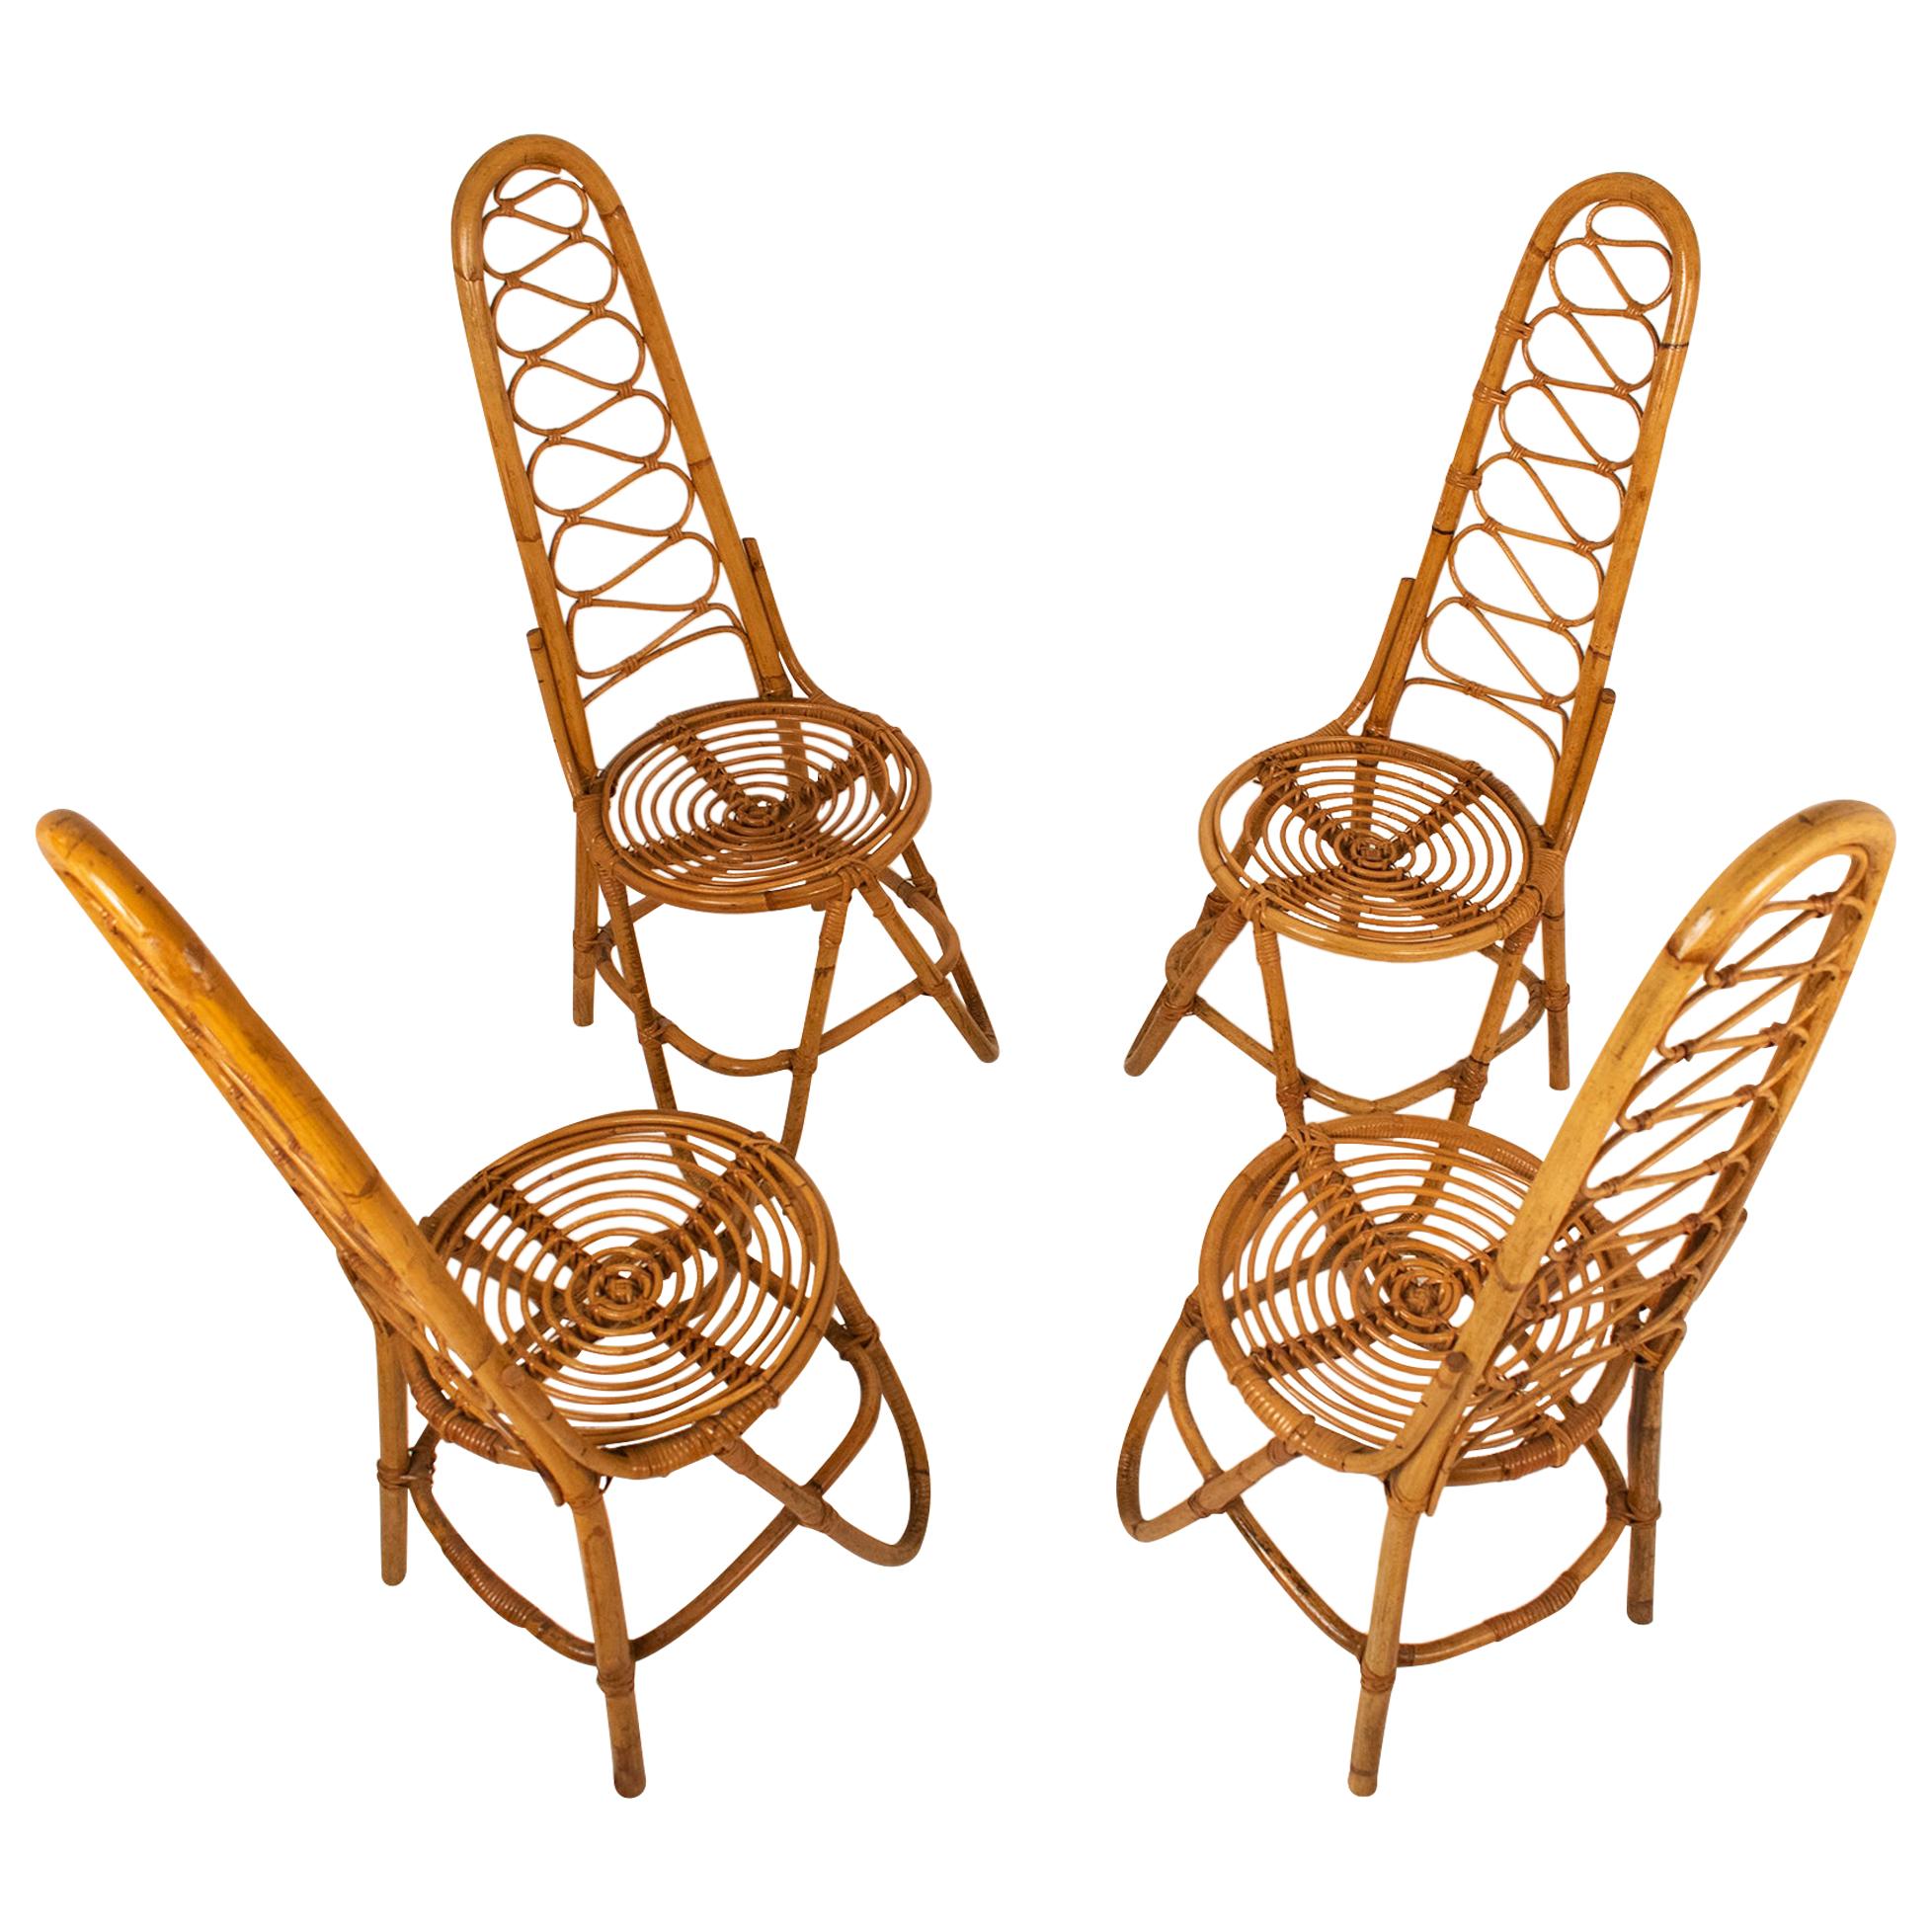 Bamboo Chairs by Dirk Van Sliedrecht for Rohe Noordwolde, 1950